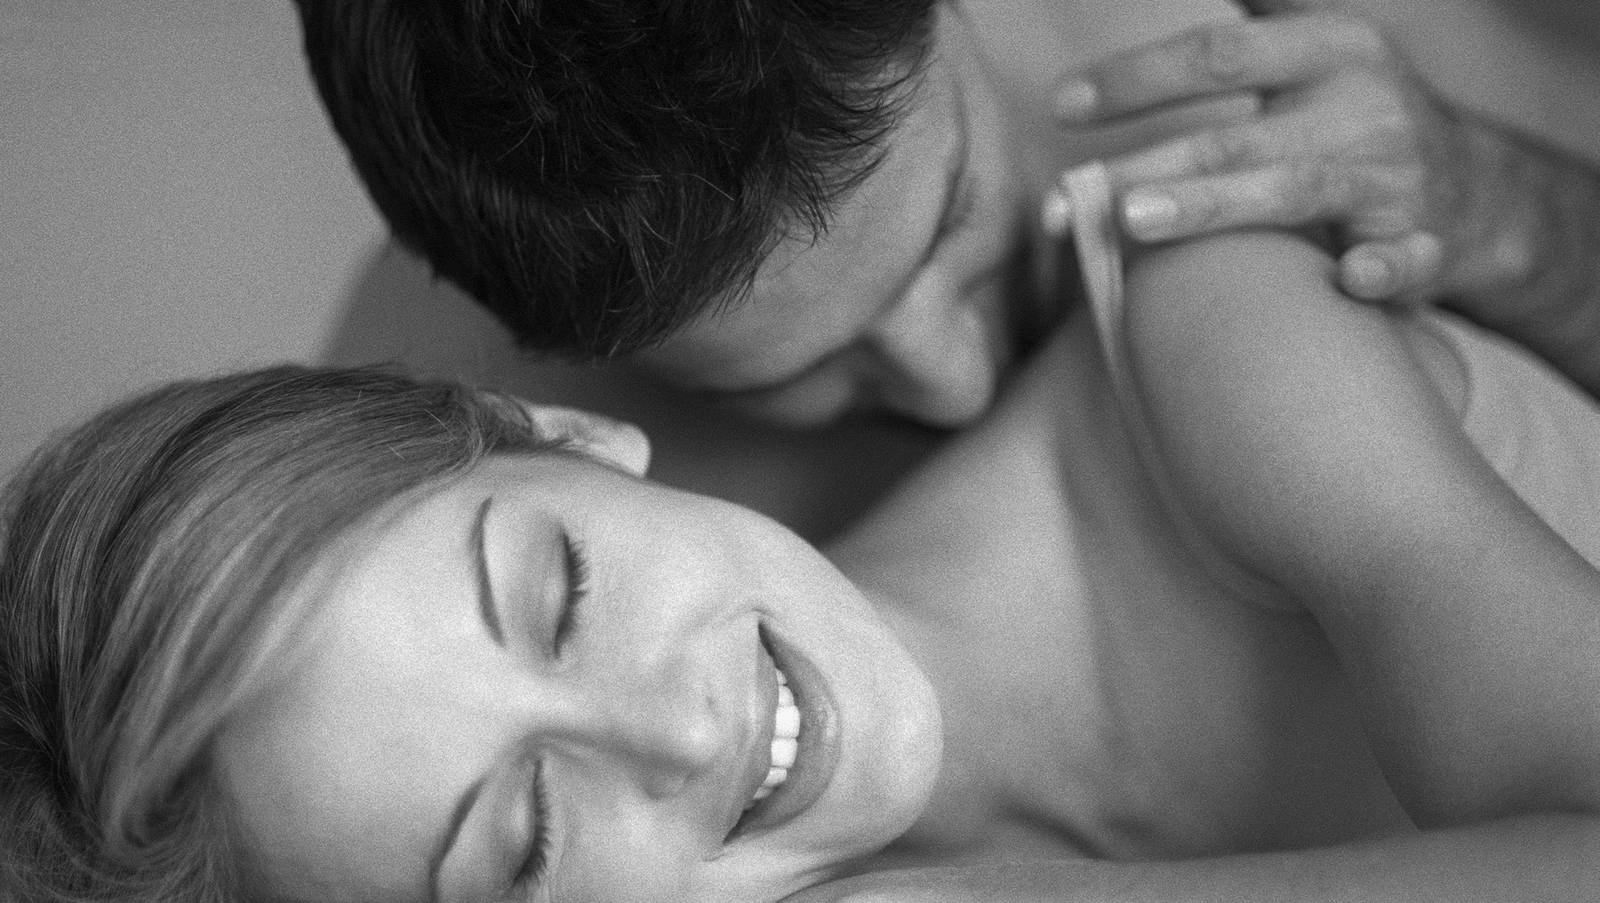 целовать женскую грудь на фотографиях фото 64